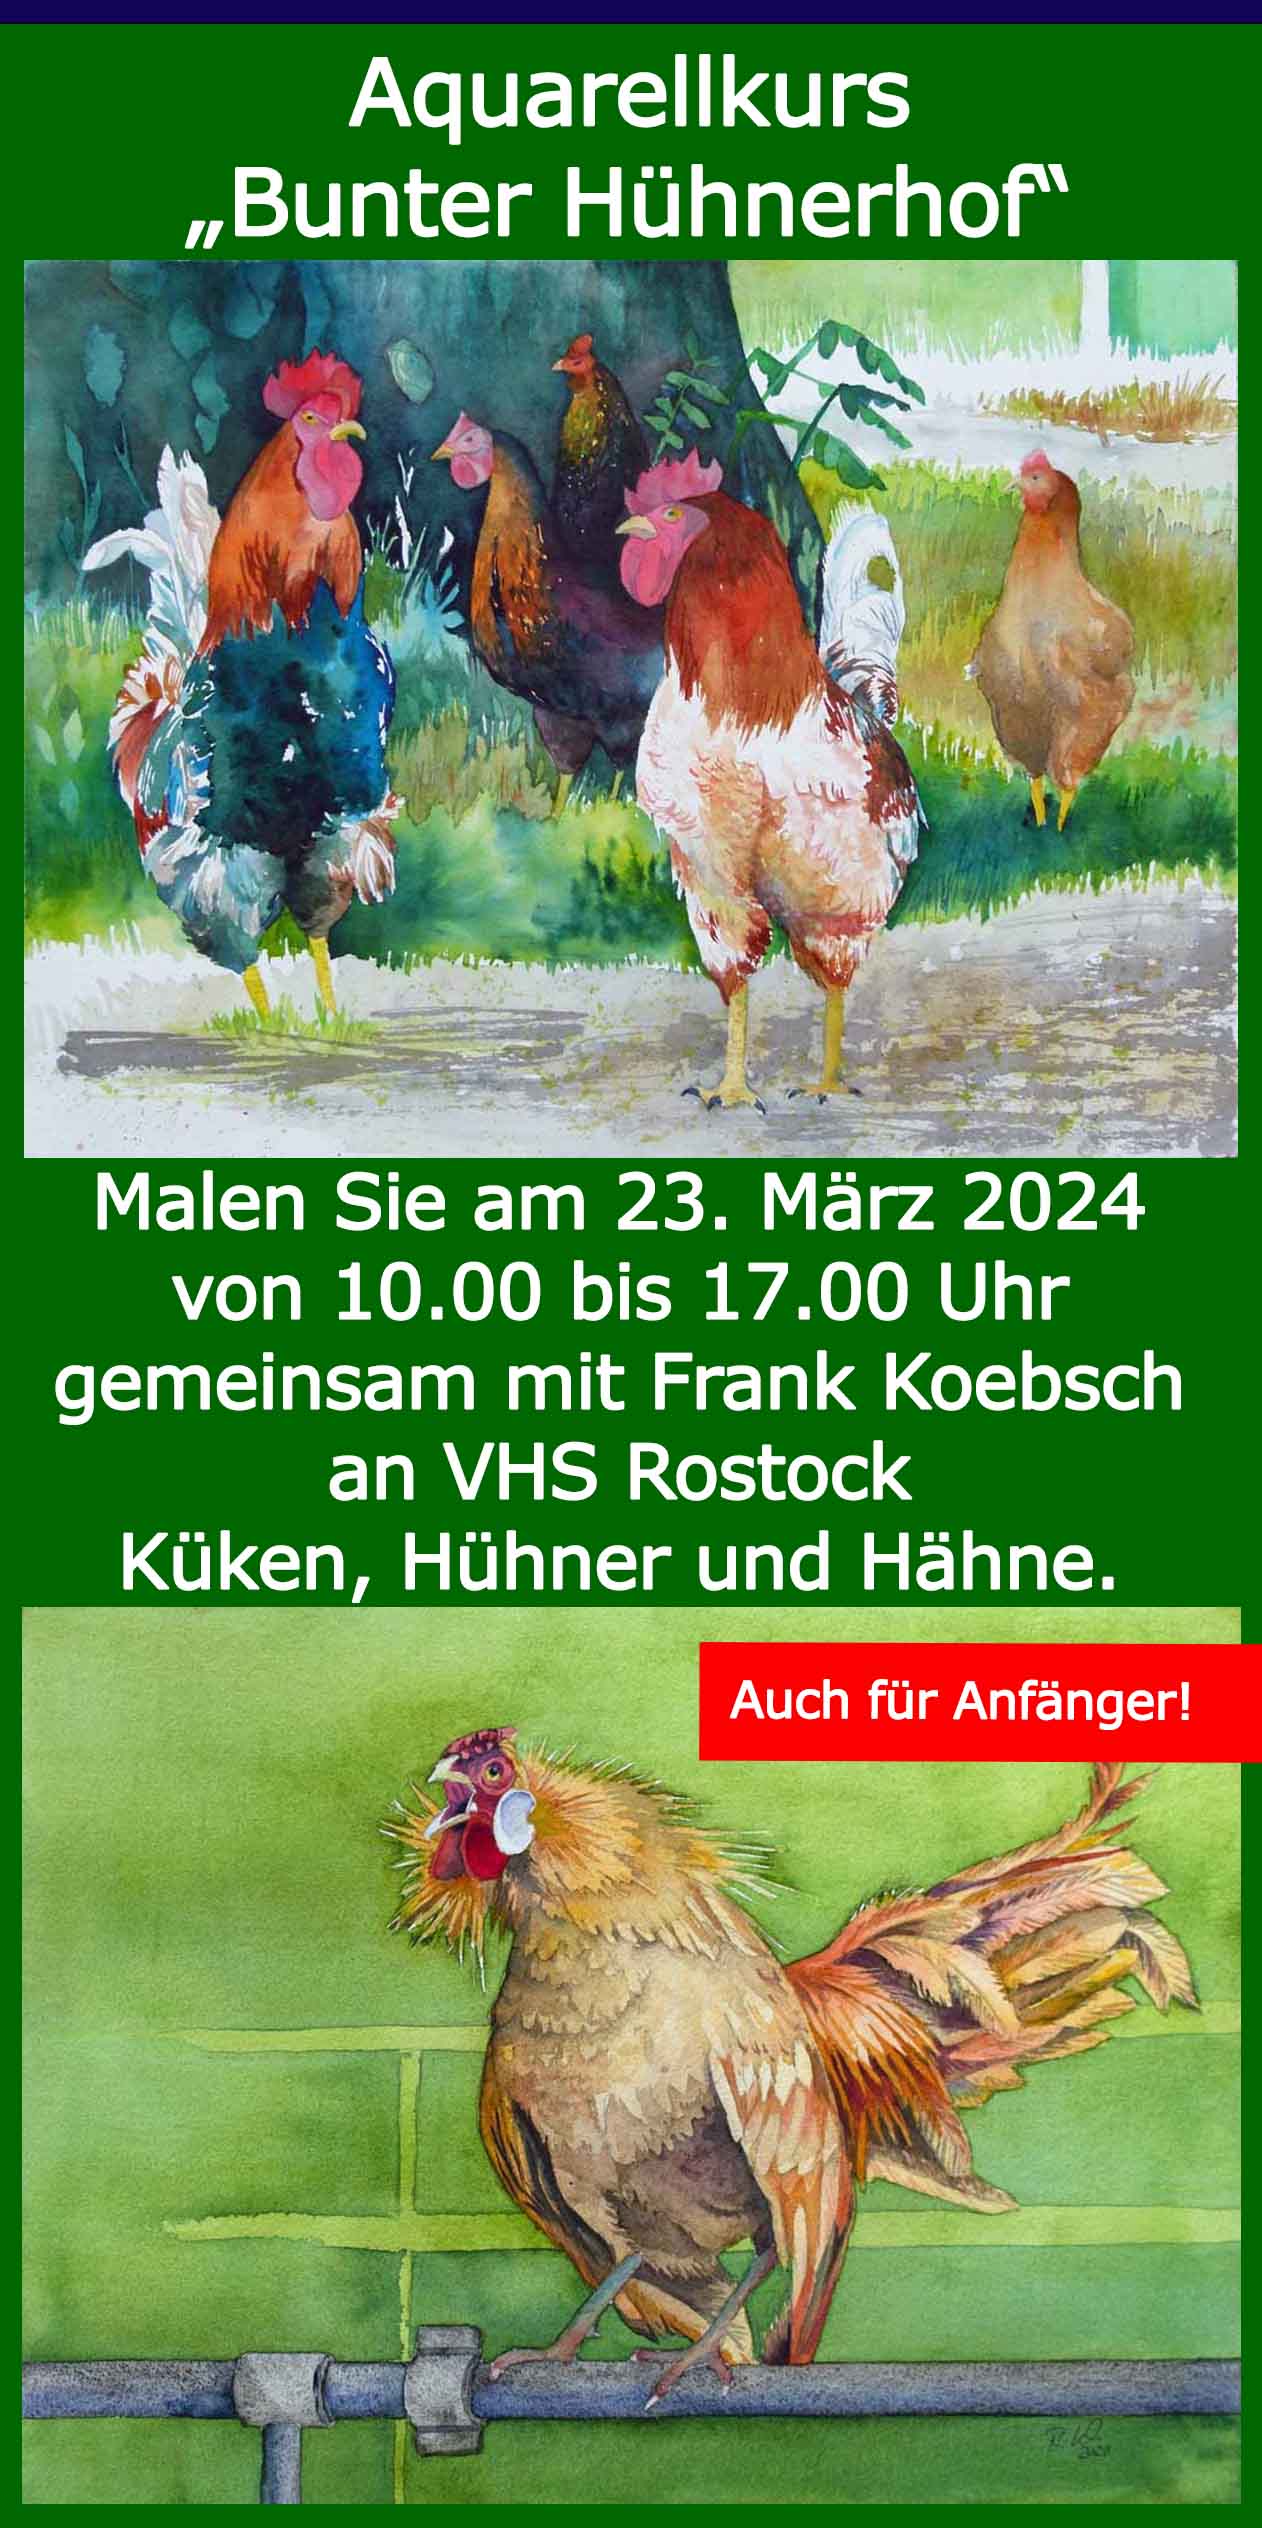 Flyer für den Aquarellkurs Bunter Hühnerhof mit Frank Koebsch